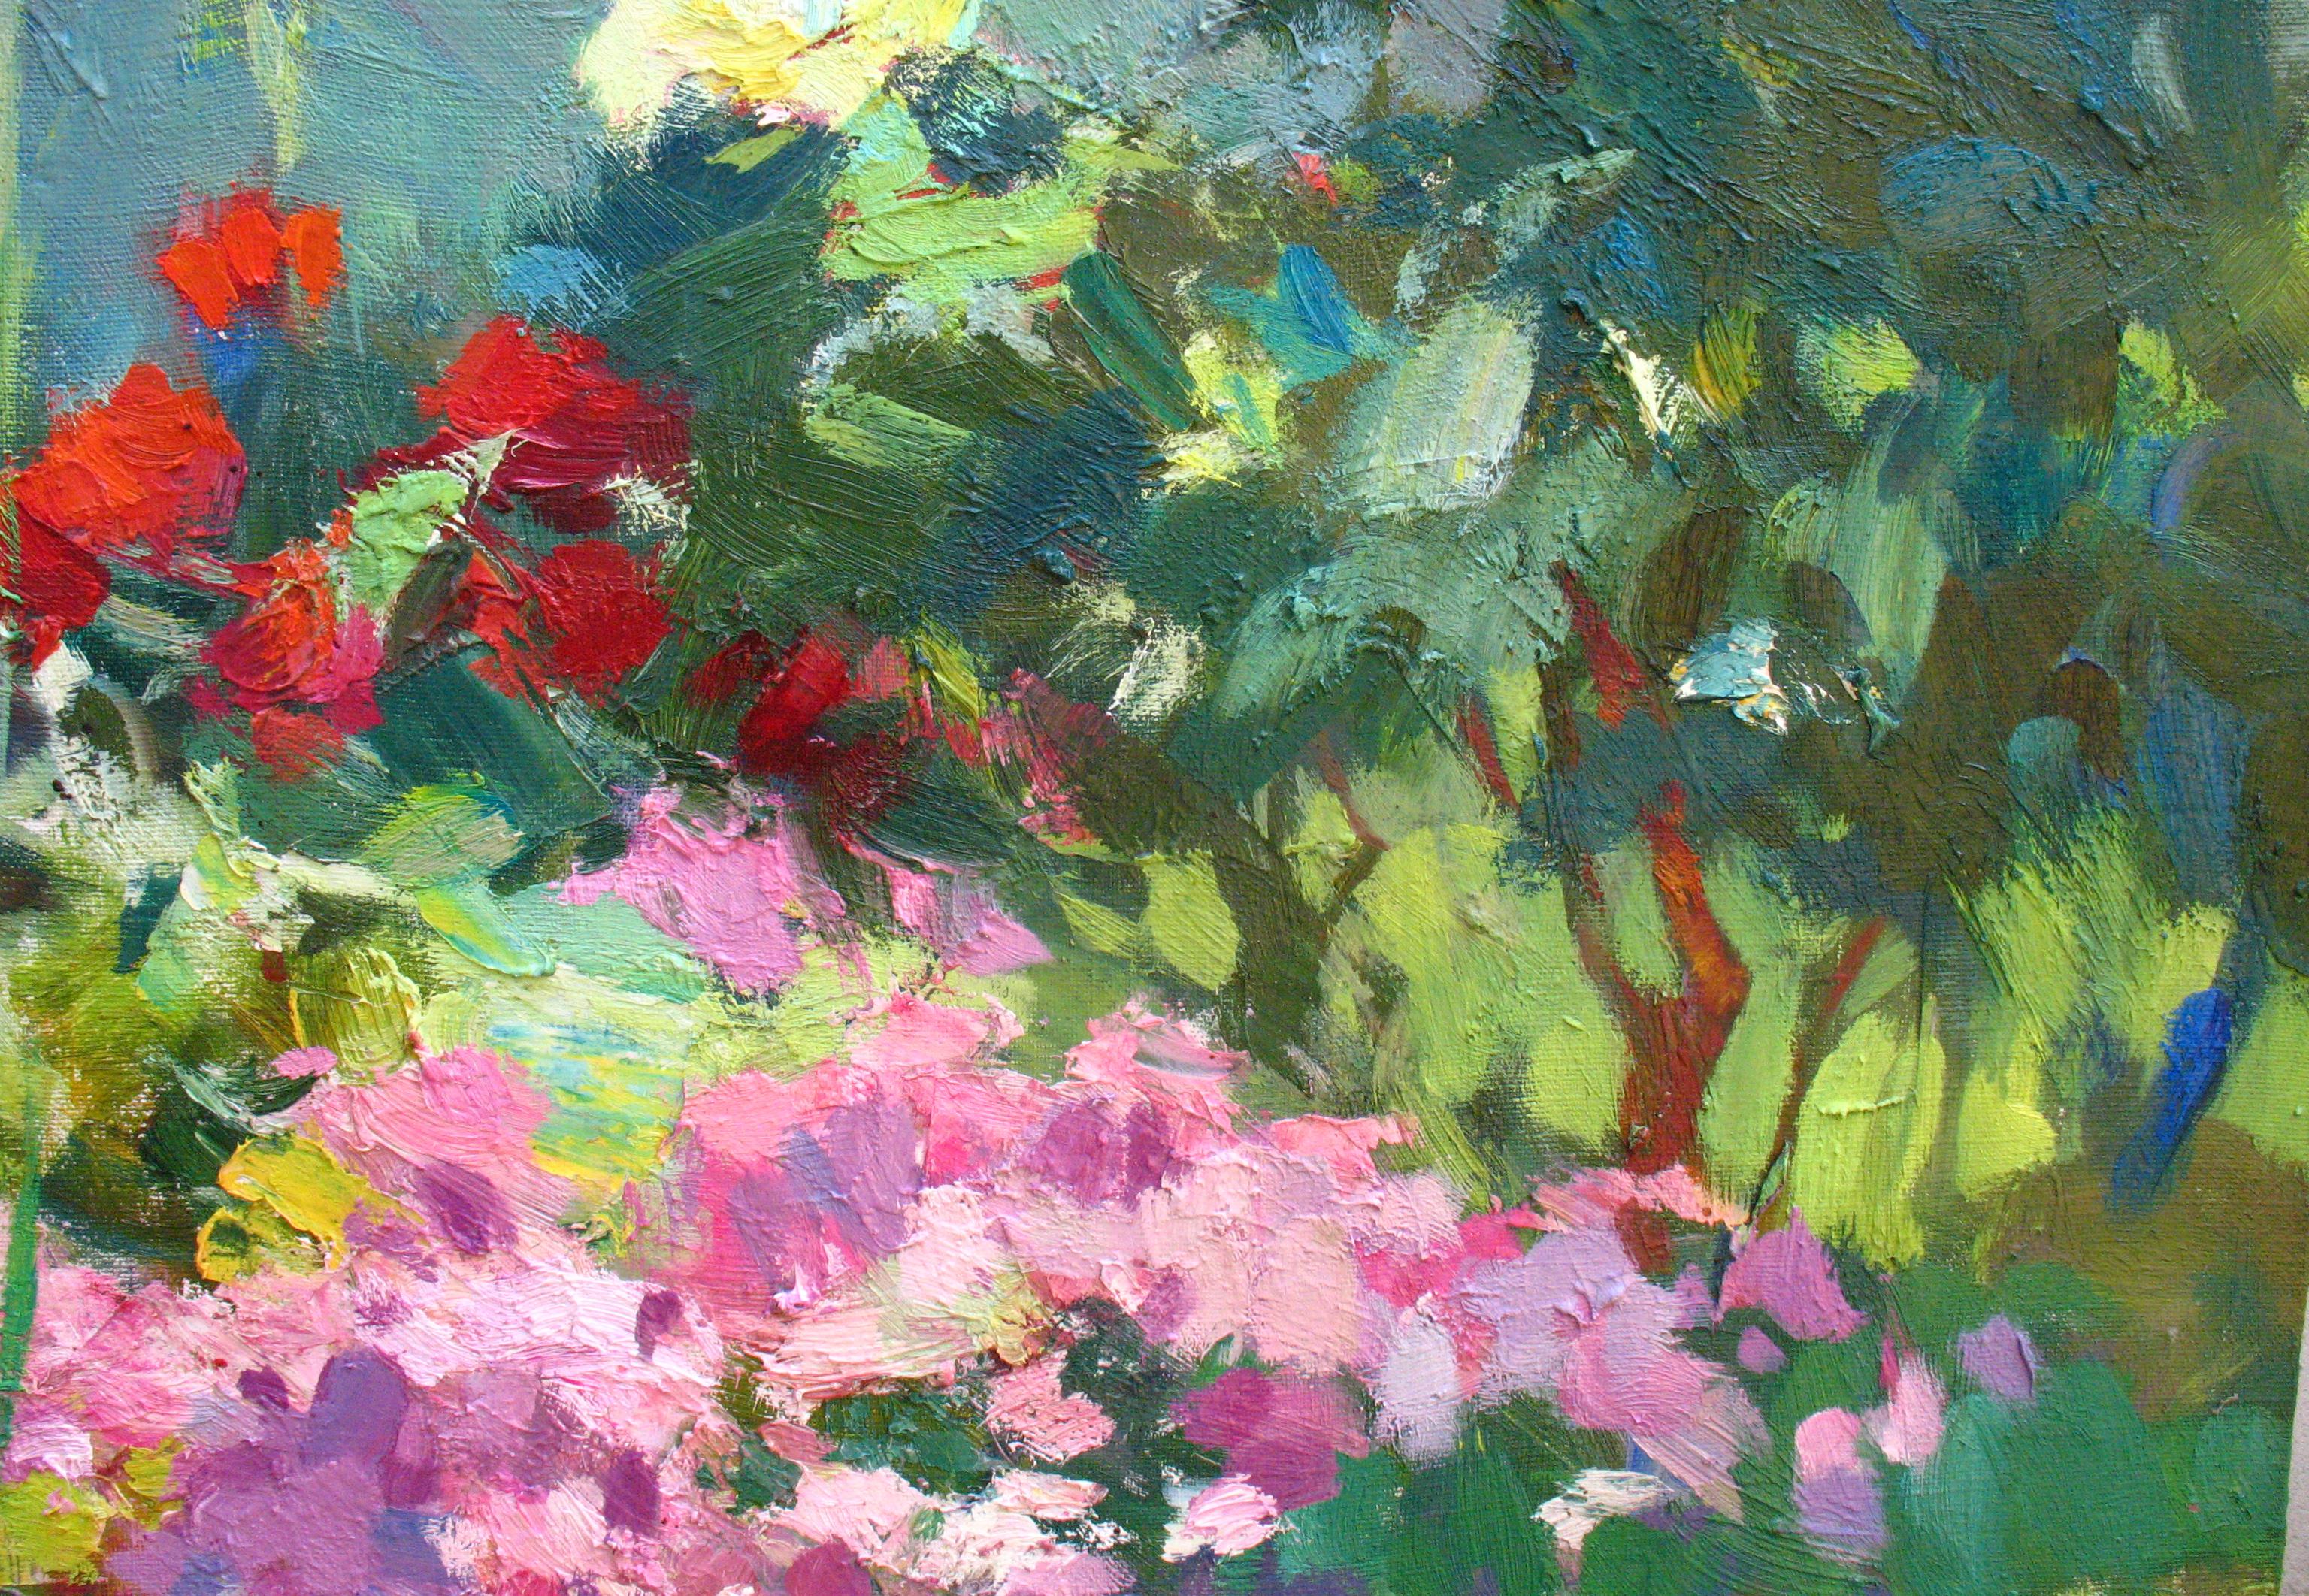 Flowerbed - Painting by Dmitriev Alexey Olegovich